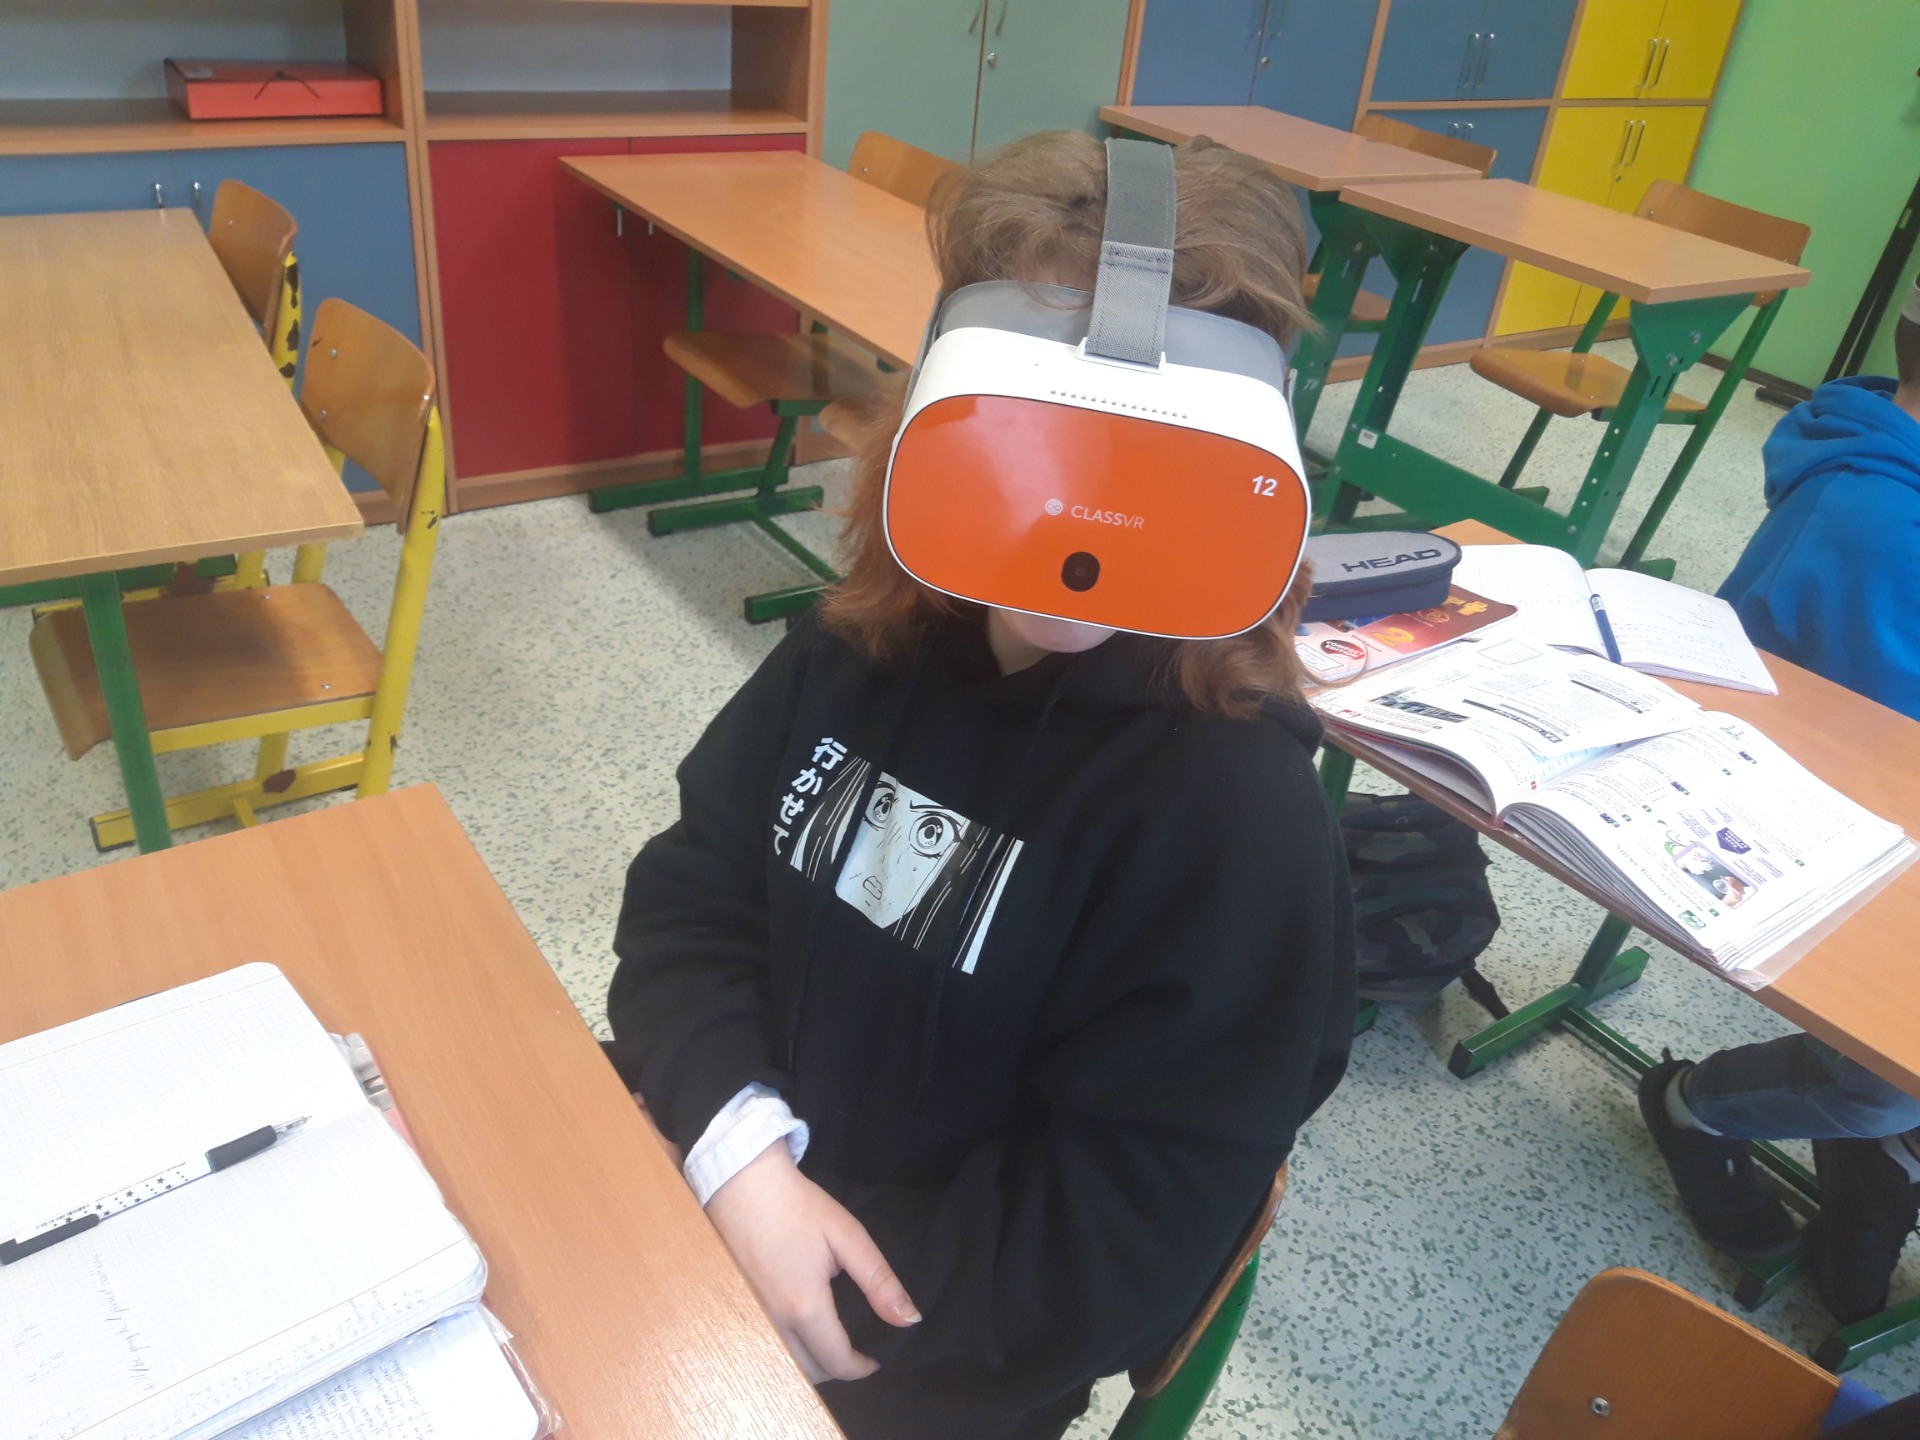 Okulary VR, czyli wirtualny świat na lekcji angielskiego #LaboratoriaPrzyszłości - Obrazek 5